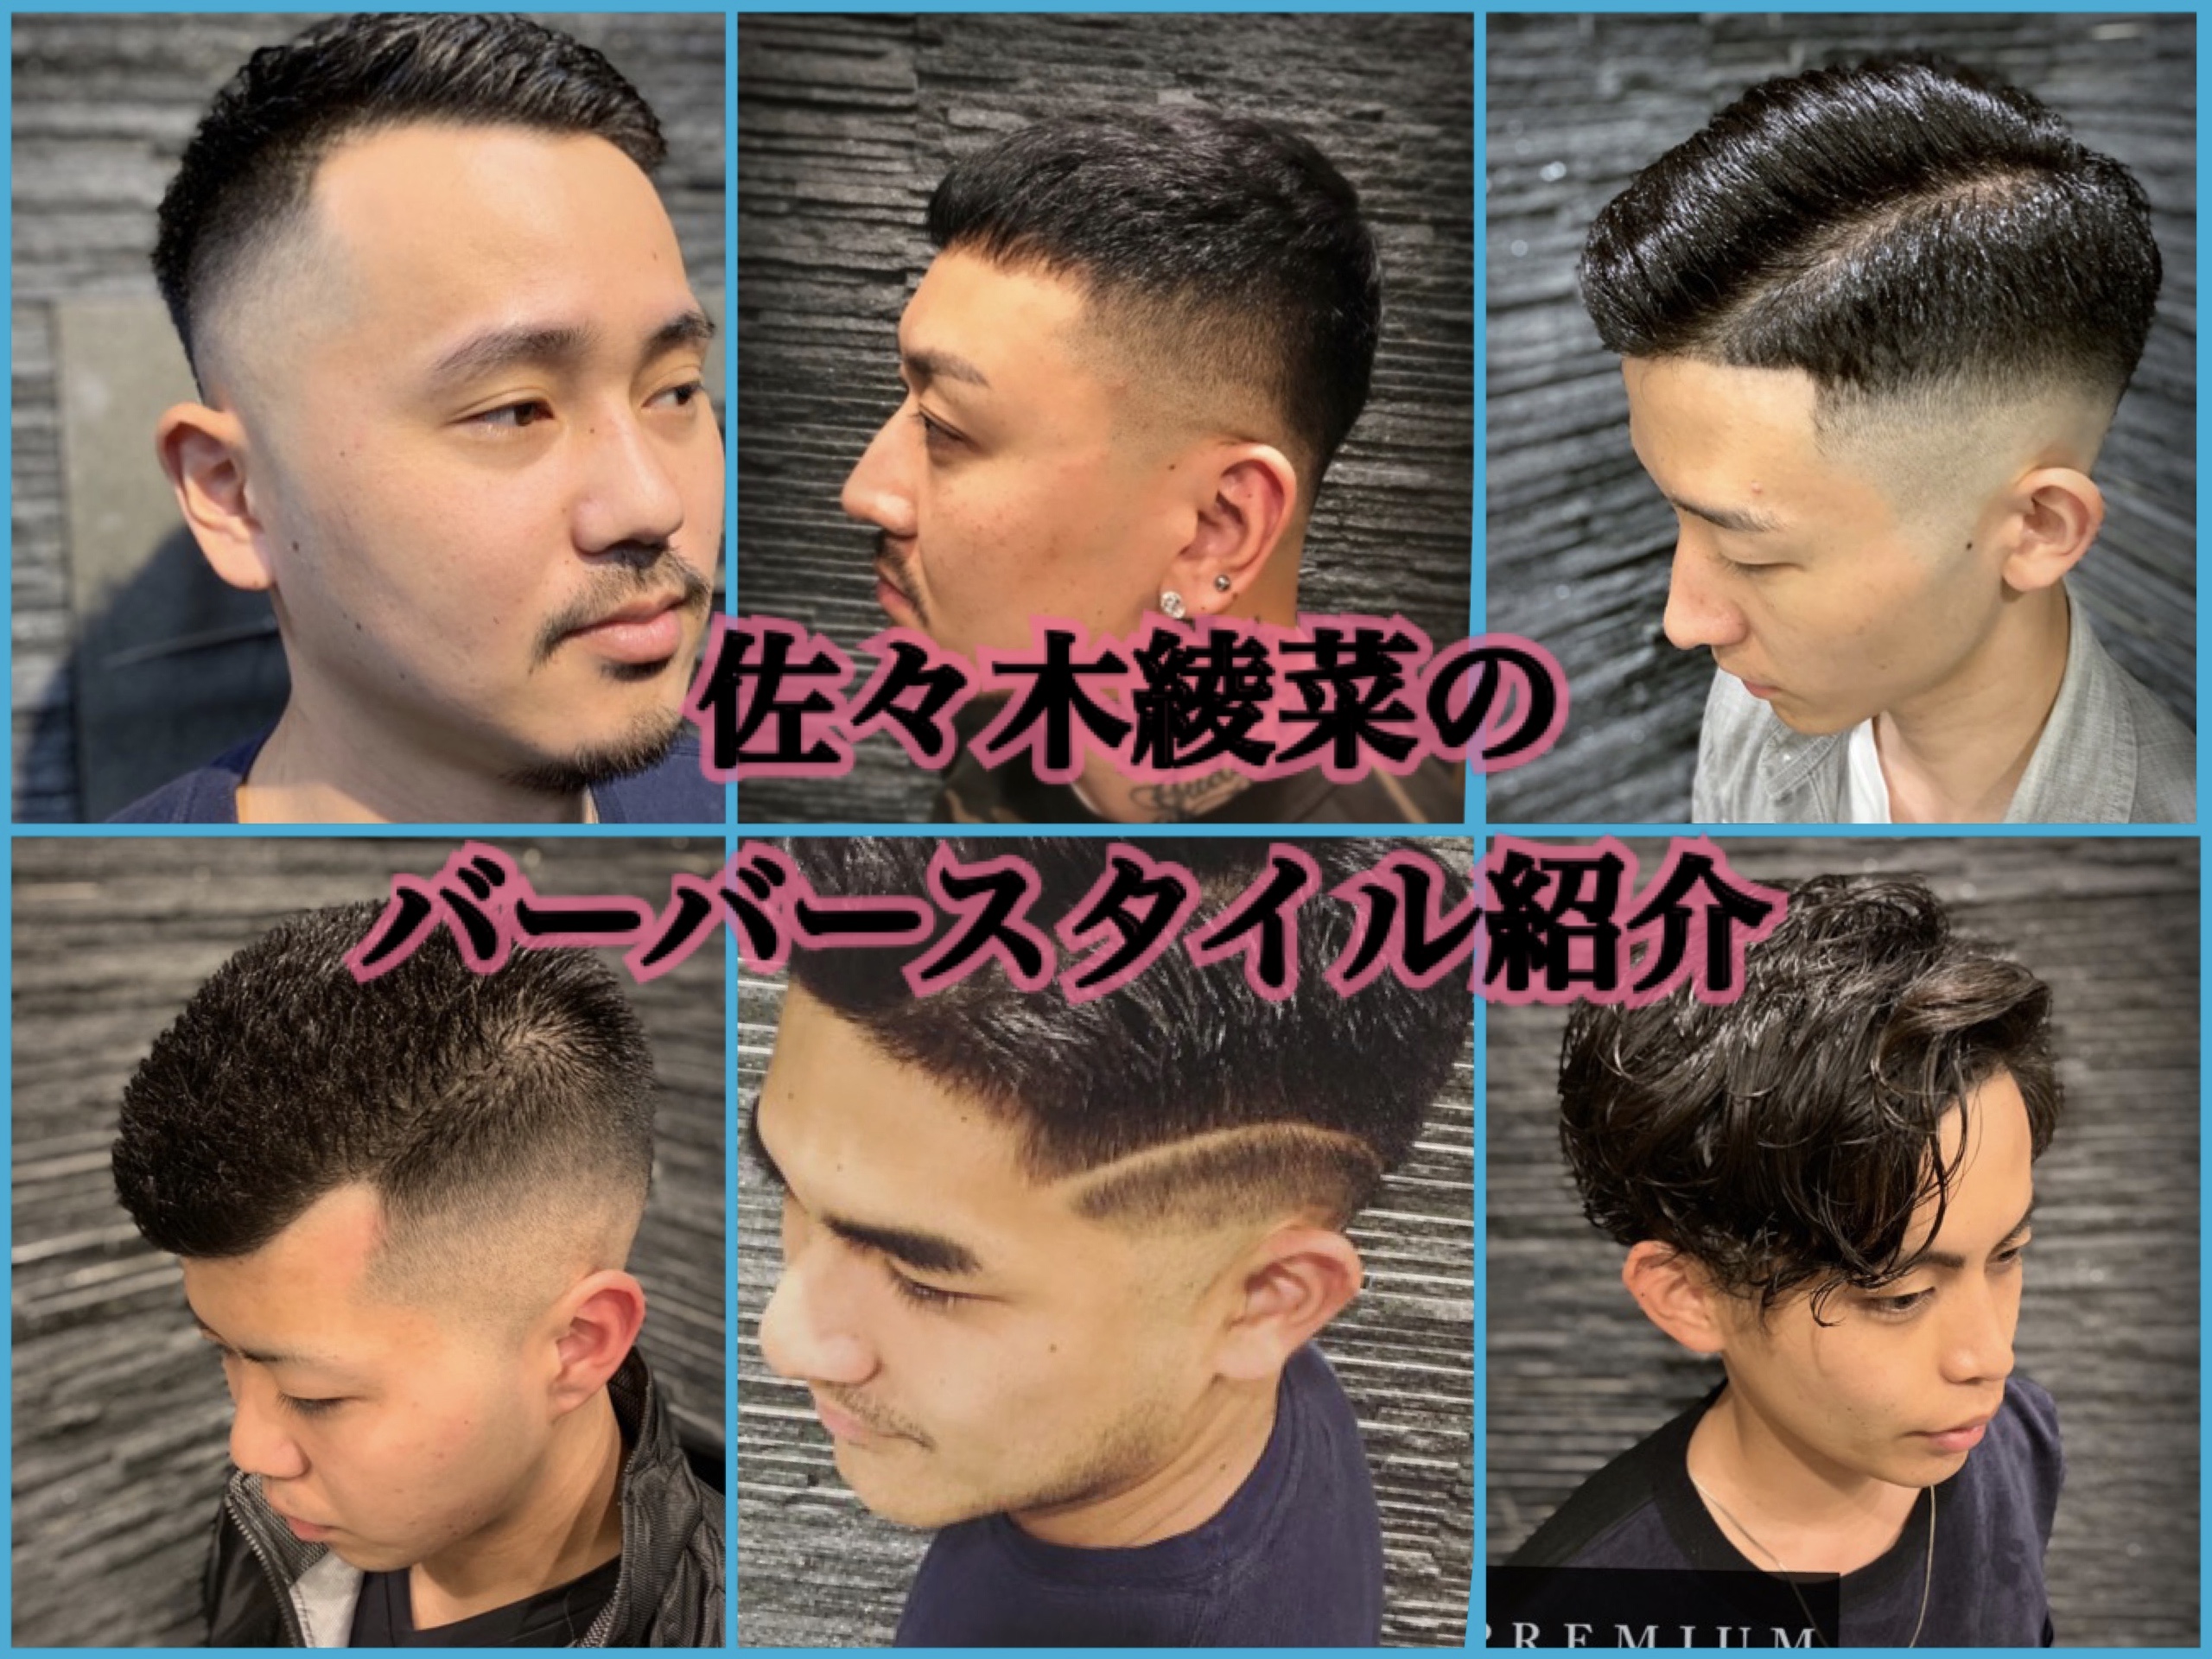 パーマオンロングヘアー ブログ Premium Barber 渋谷原宿 高級理容室 床屋 ヒロ銀座ヘアーサロン